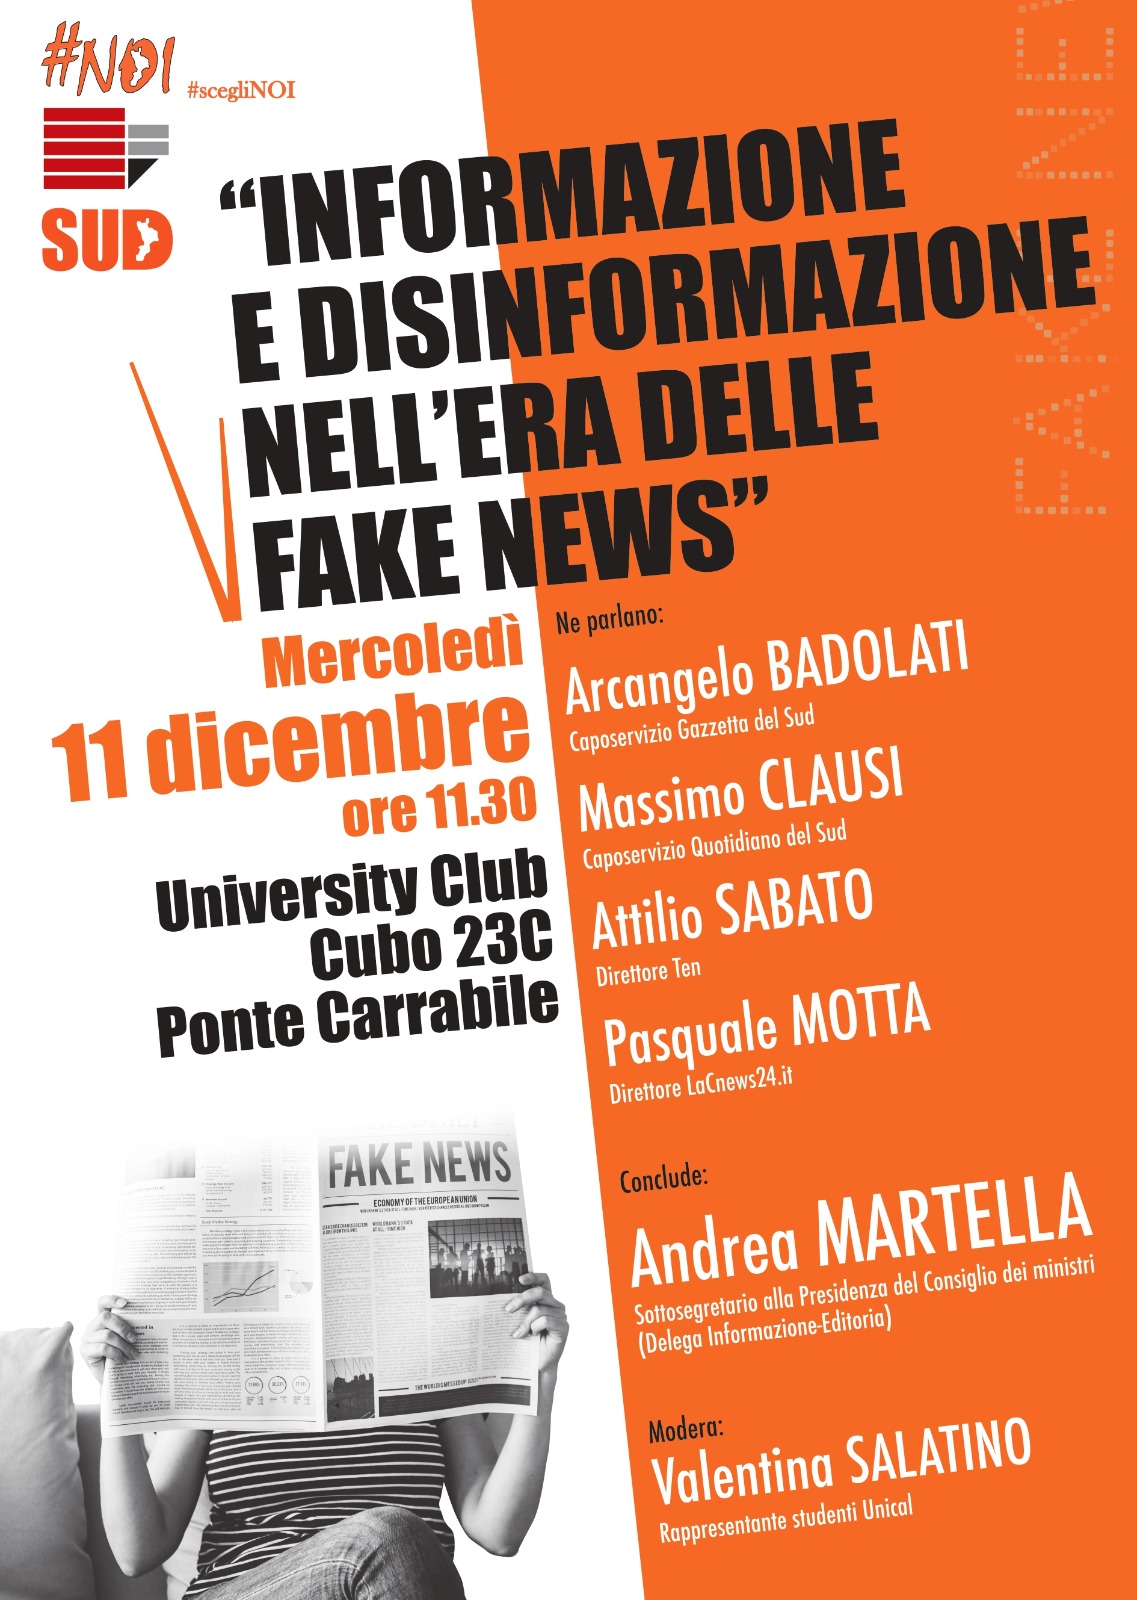 INCONTRO-UNICAL-MARTELLA Unical: domani 11 dicembre incontro con il sottosegretario Andrea Martella